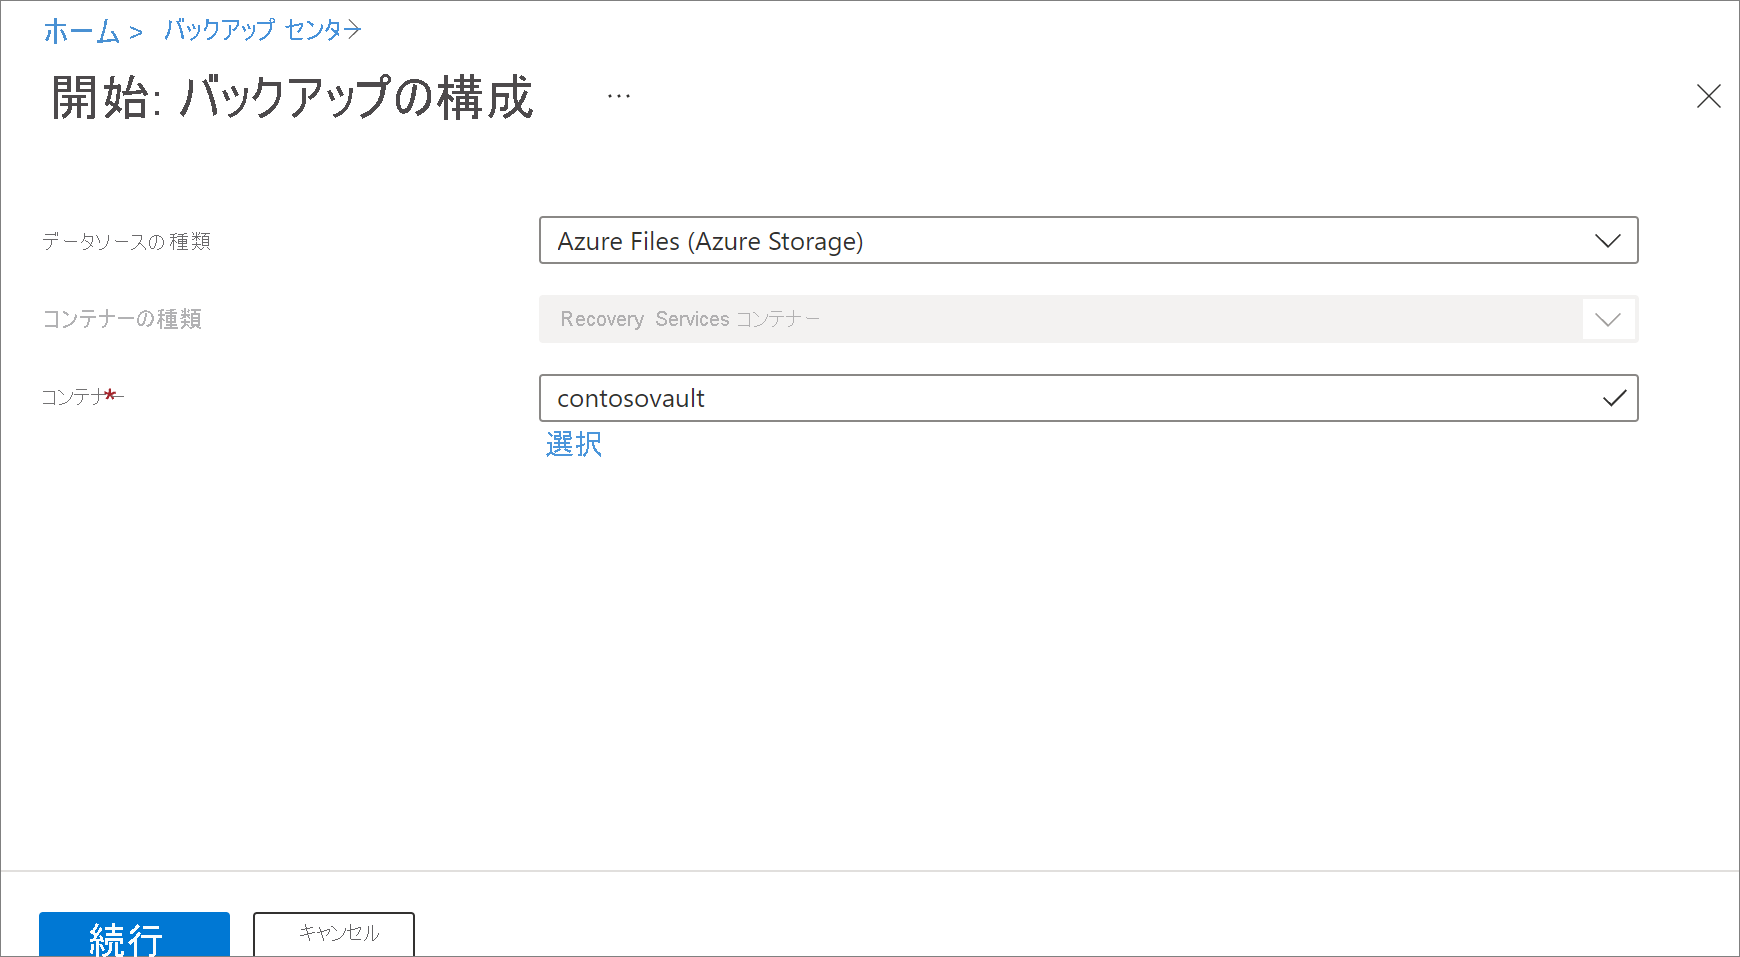 Azure Files の選択を示すスクリーンショット。